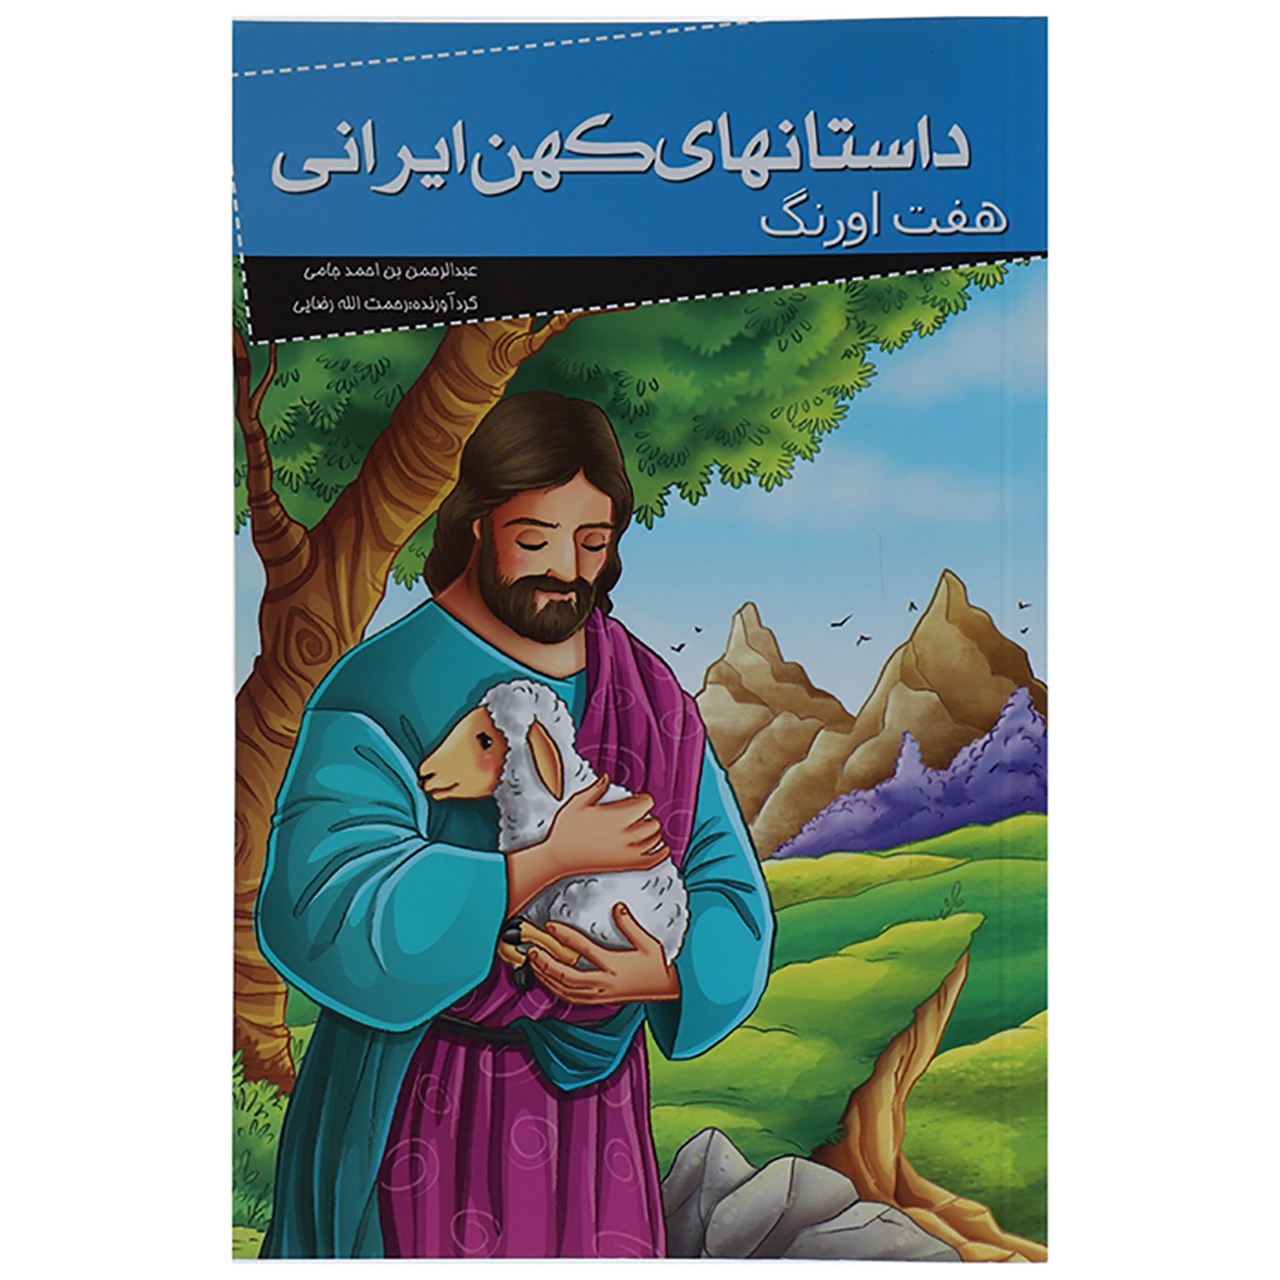 نقد و بررسی کتاب داستانهای کهن ایرانی هفت اورنگ اثر عبدالرحمان جامی توسط خریداران